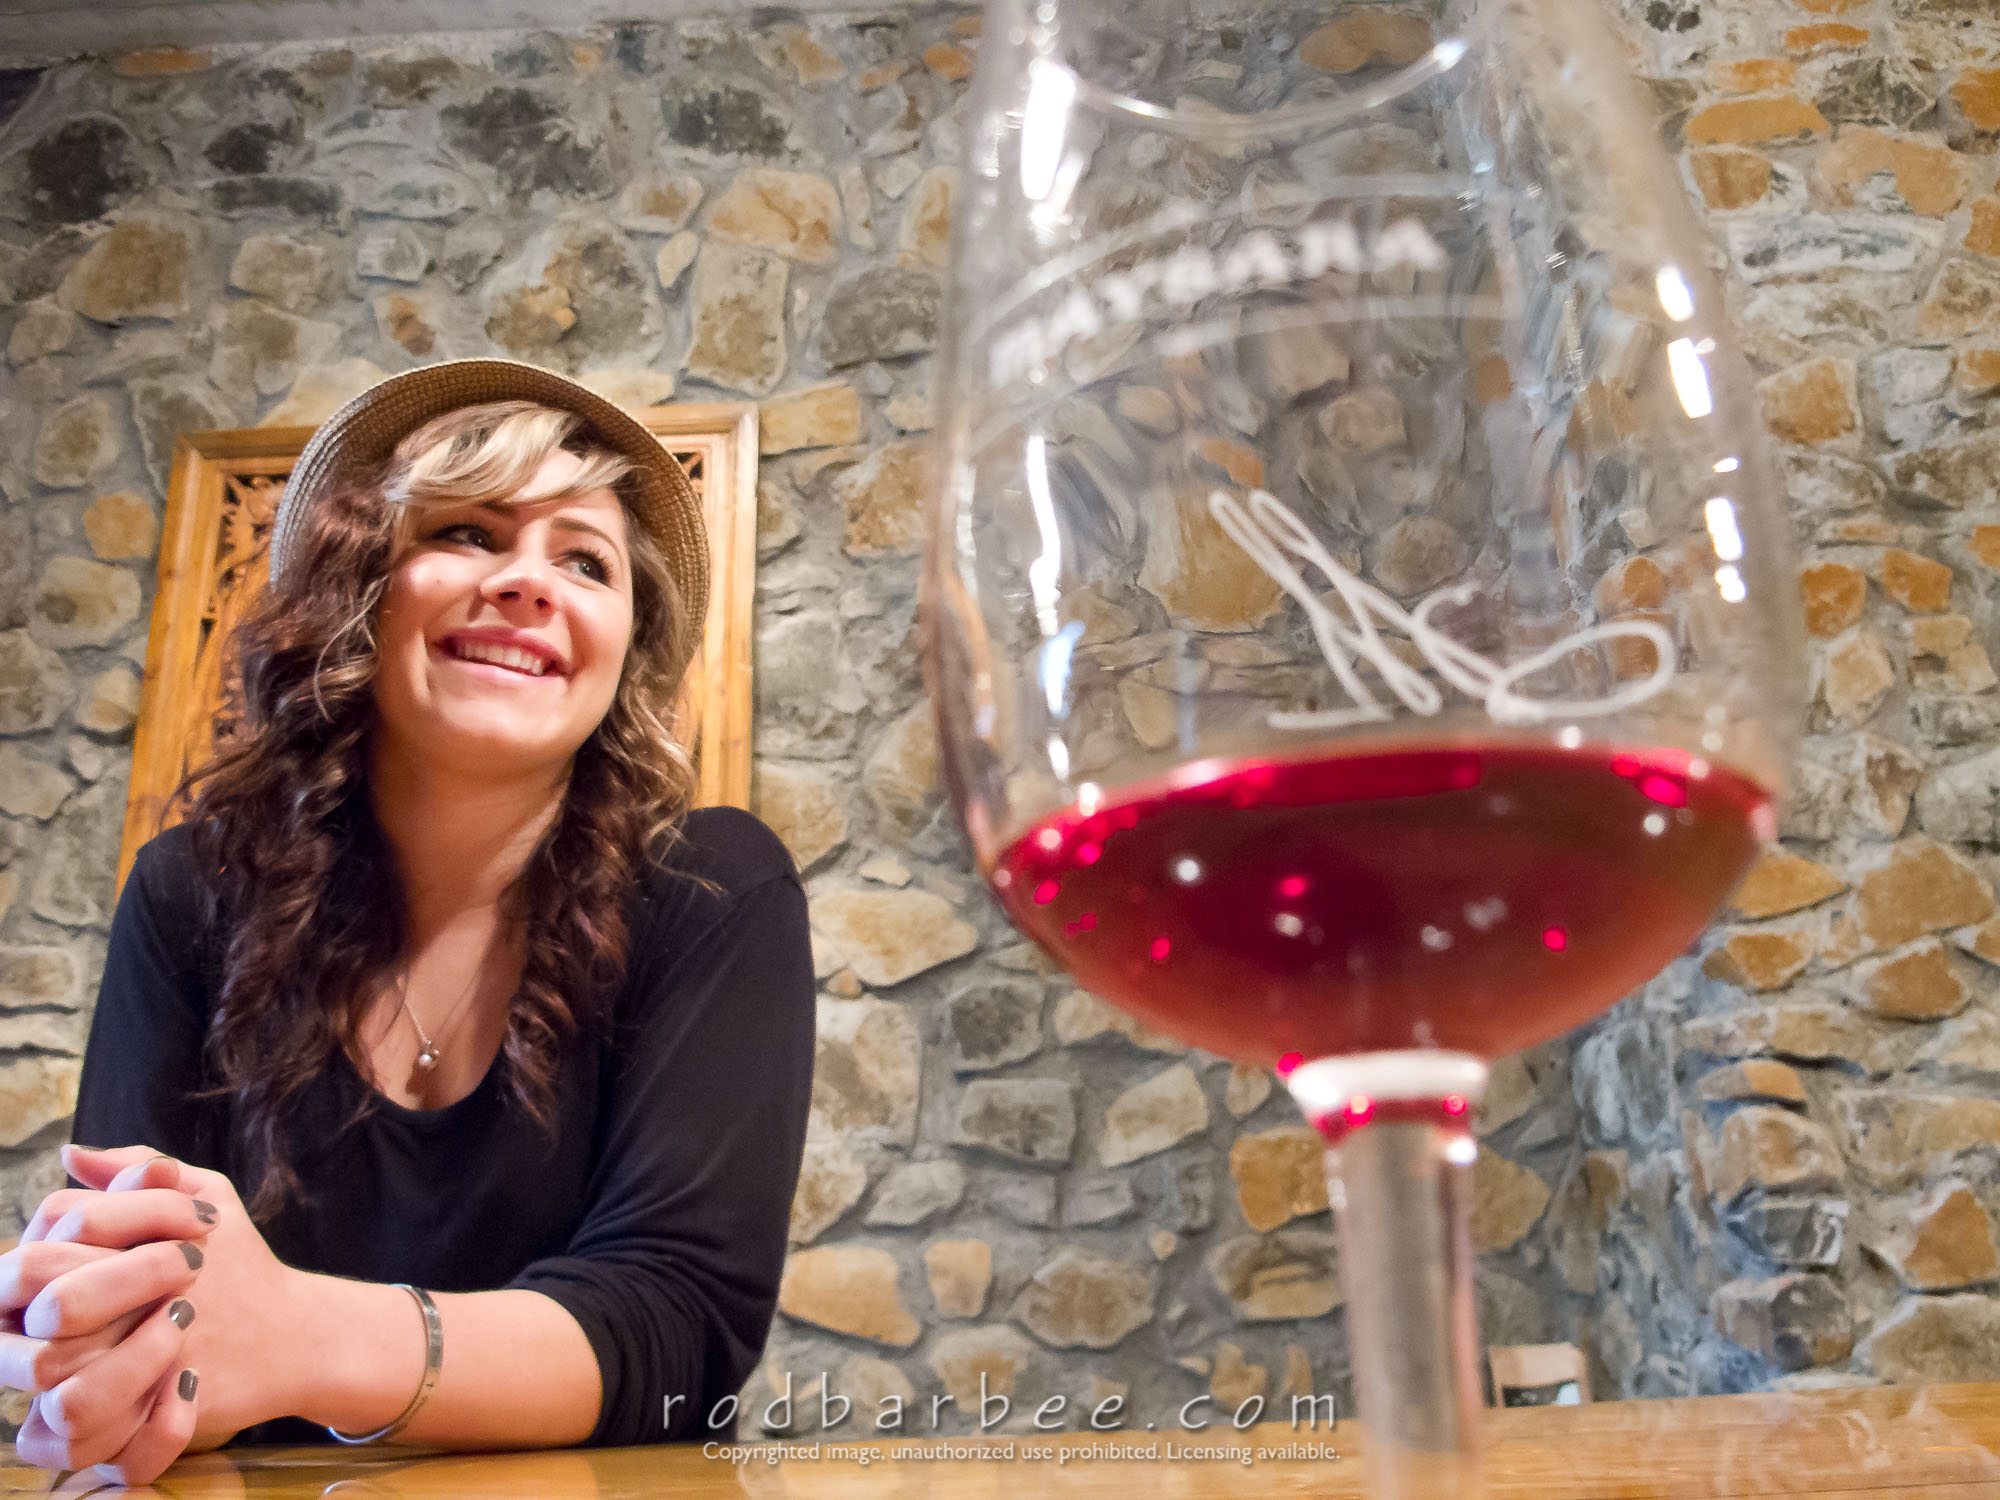 Barbee_111022_G11_2492 |  Ashley, Tasting Room host at Maysara Winery